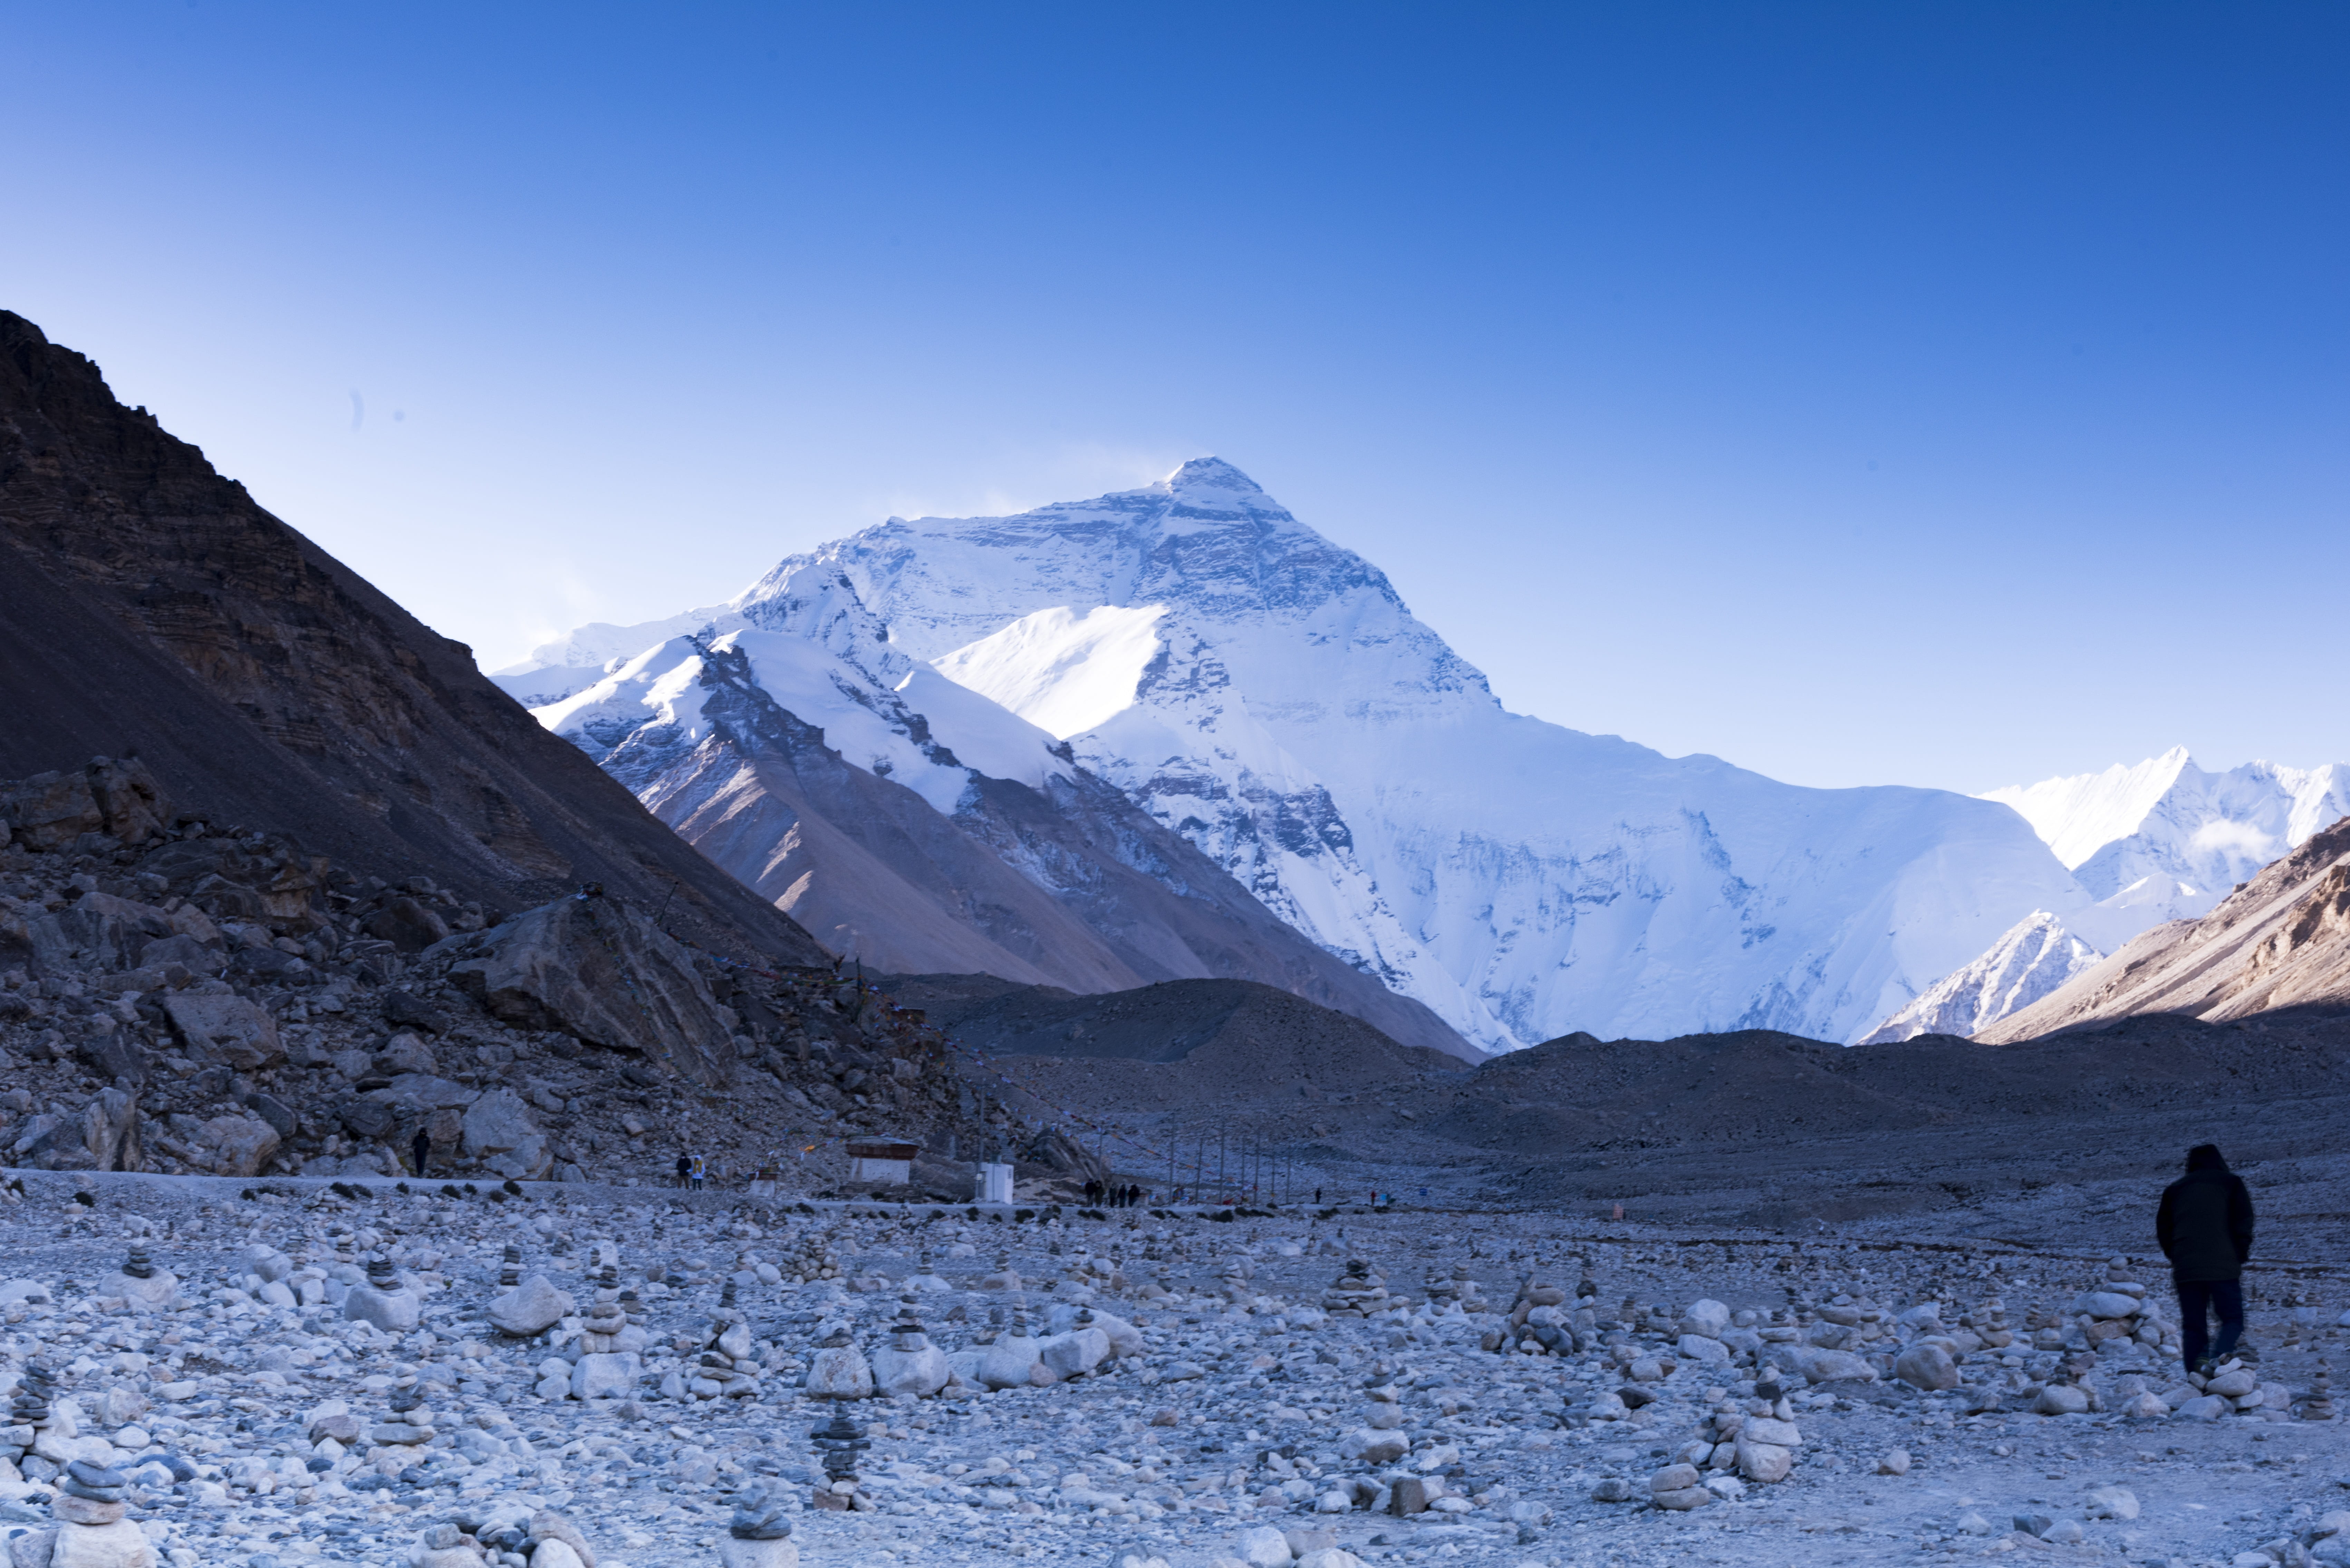 Mount Everest, base camp, landscape, himalaya, trekking, summit